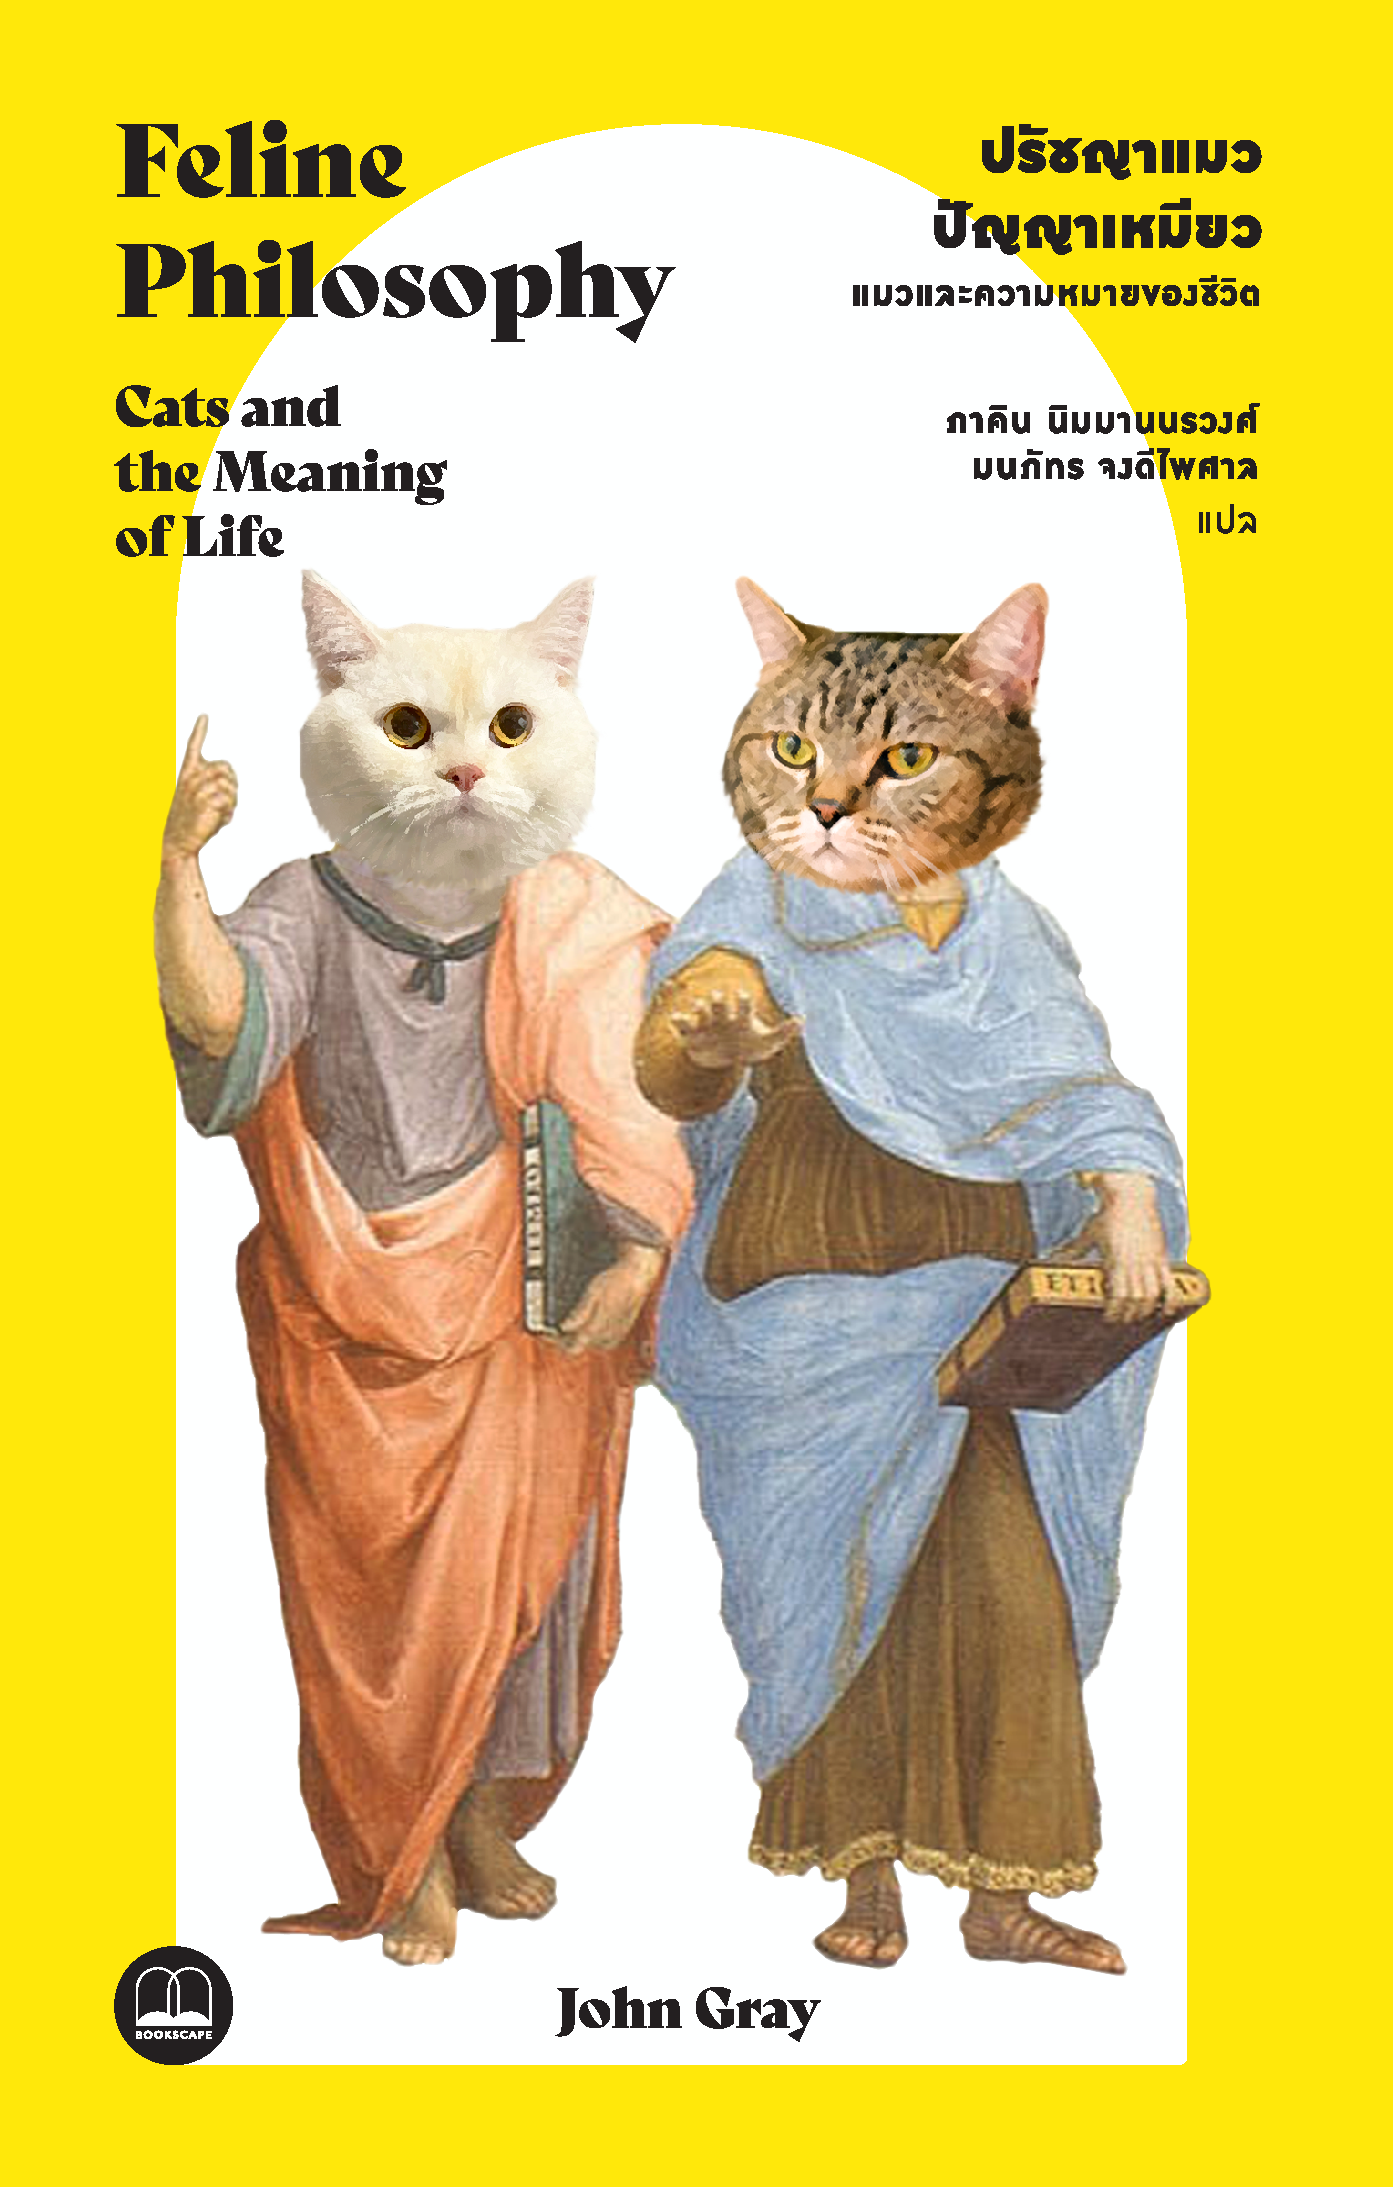 (จัดส่ง 21 เมษายน 65) ปรัชญาแมว ปัญญาเหมียว: แมวและความหมายของชีวิต Feline Philosophy / John Gray / ภาคิน นิมมานนรวงศ์ และ มนภัทร จงดีไพศาล / Bookscape